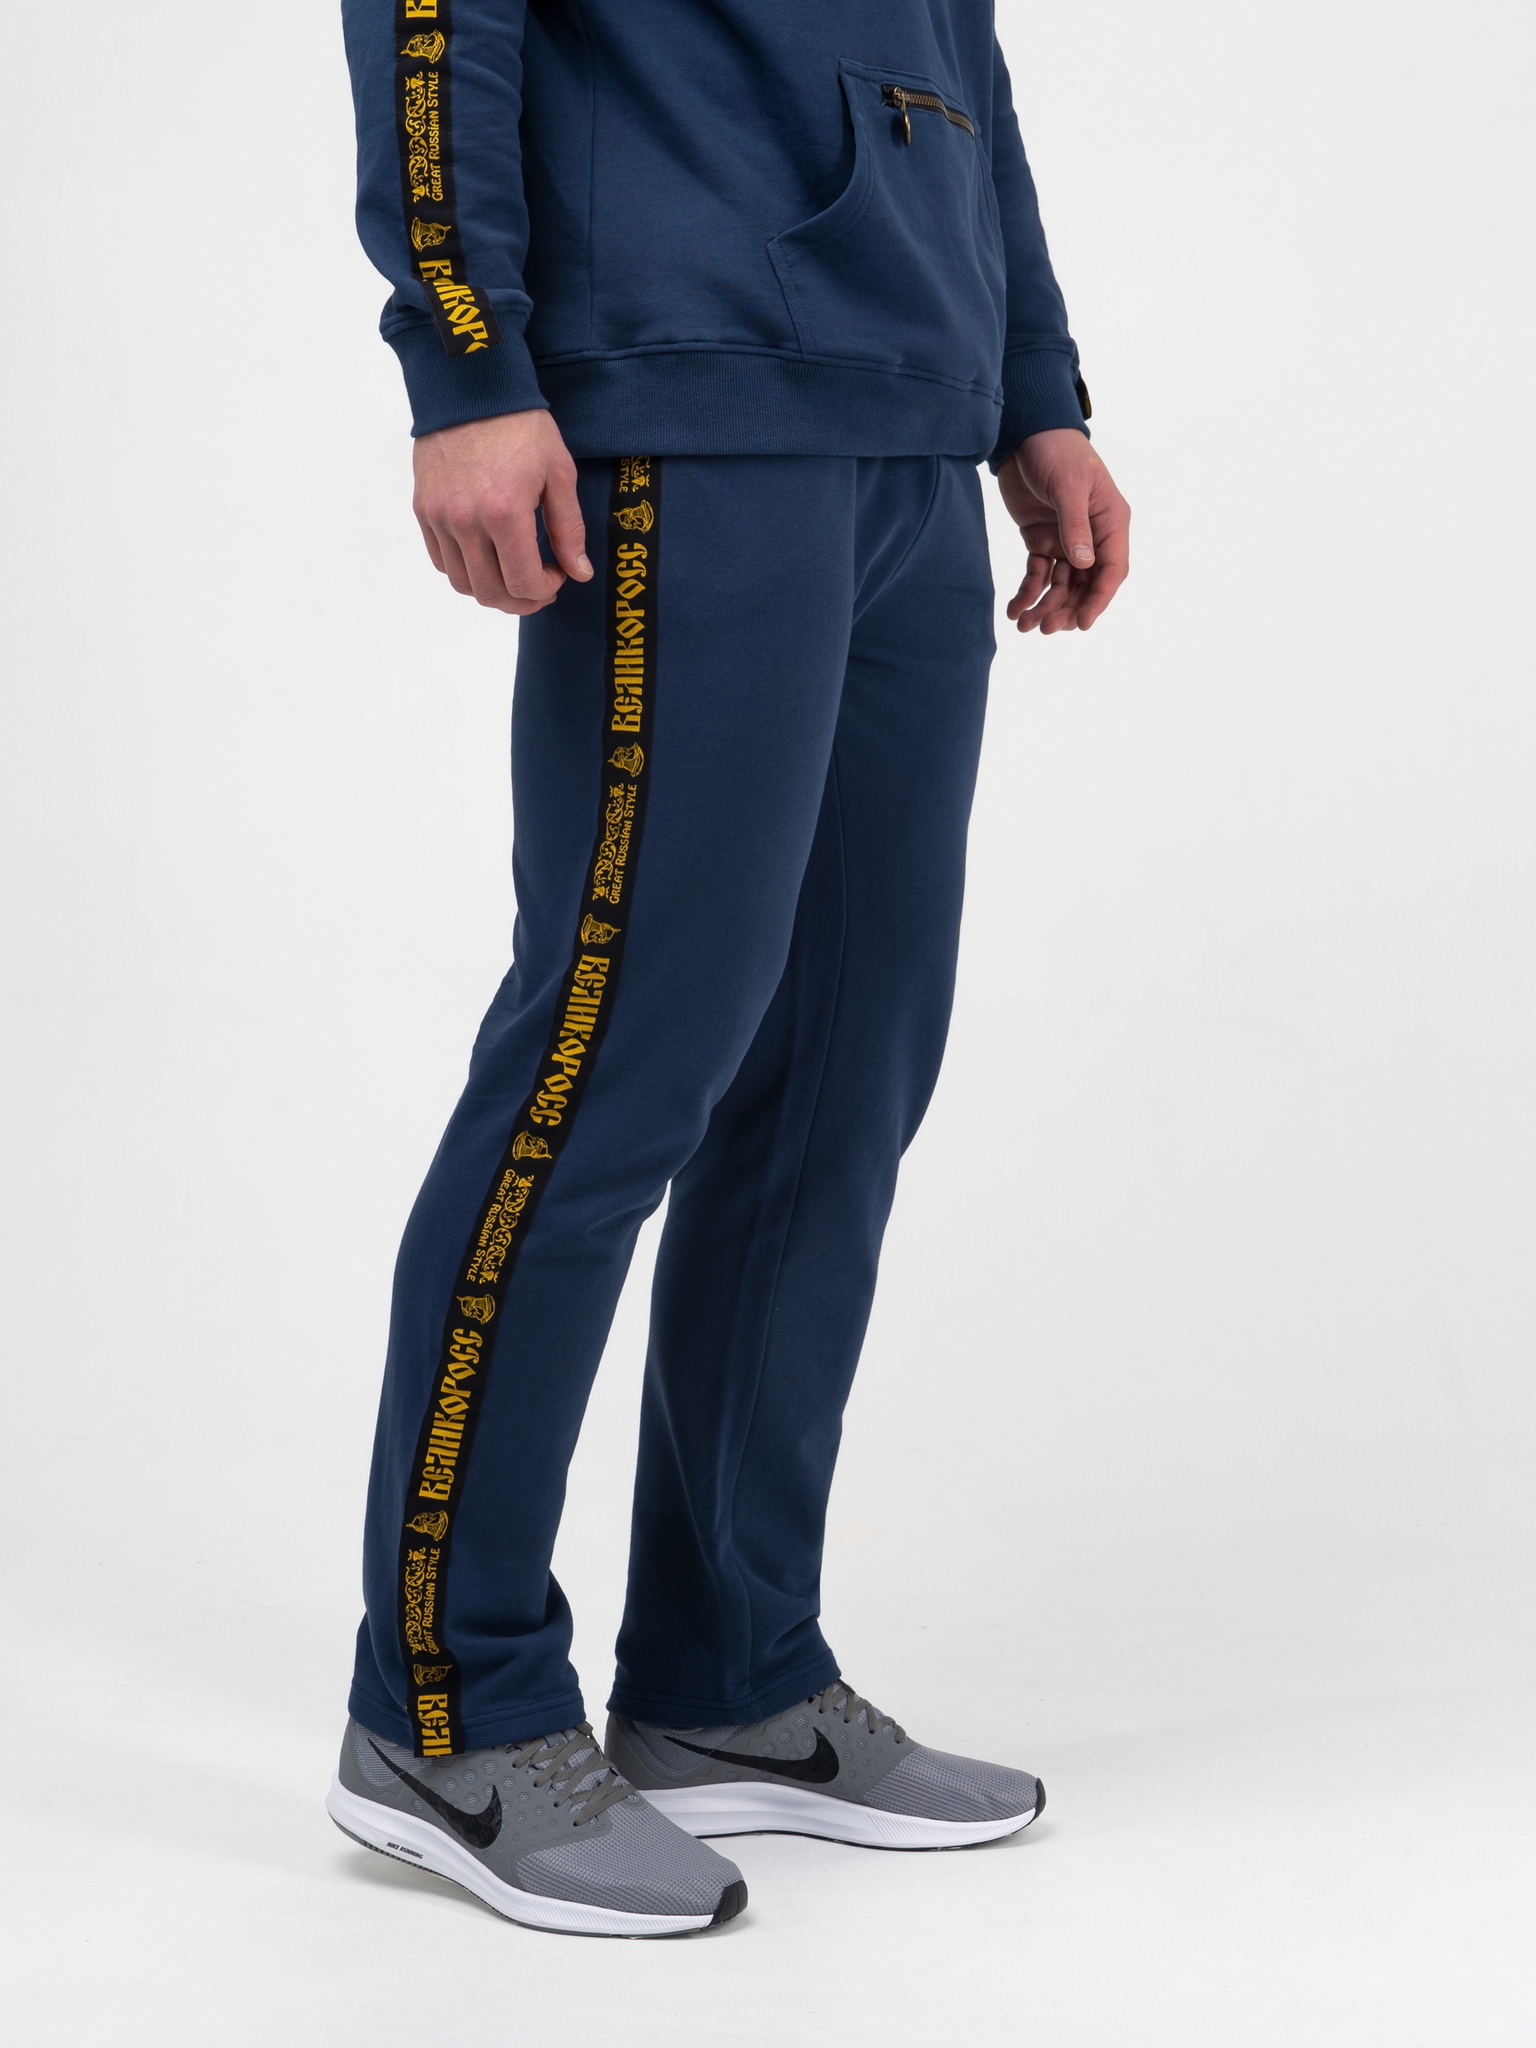 фото Спортивные брюки мужские великоросс чемпион синие 46 ru